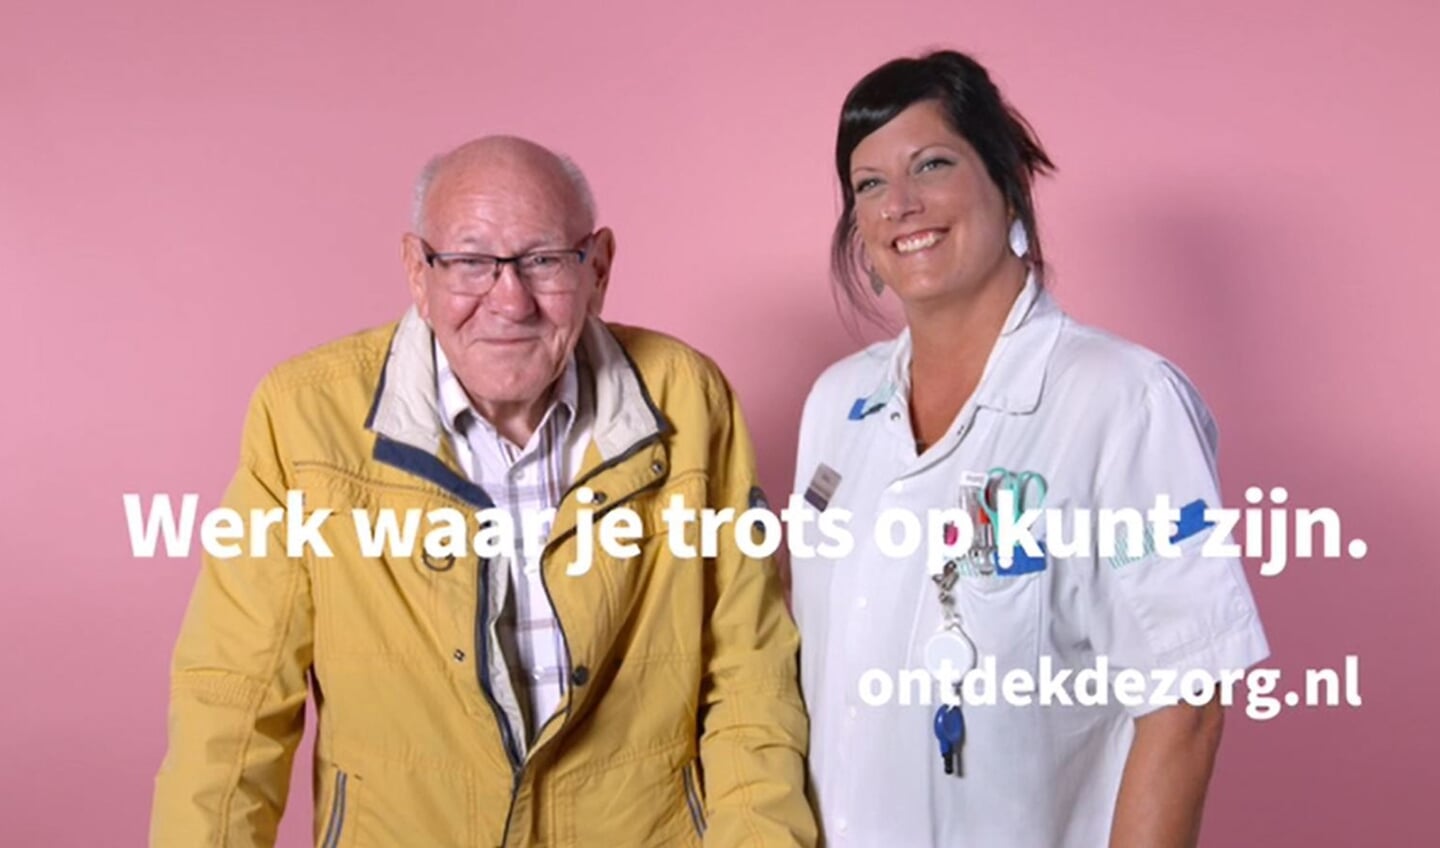 Oncologieverpleegkundige, Selina van het Beatrixziekenhuis in Gorinchem